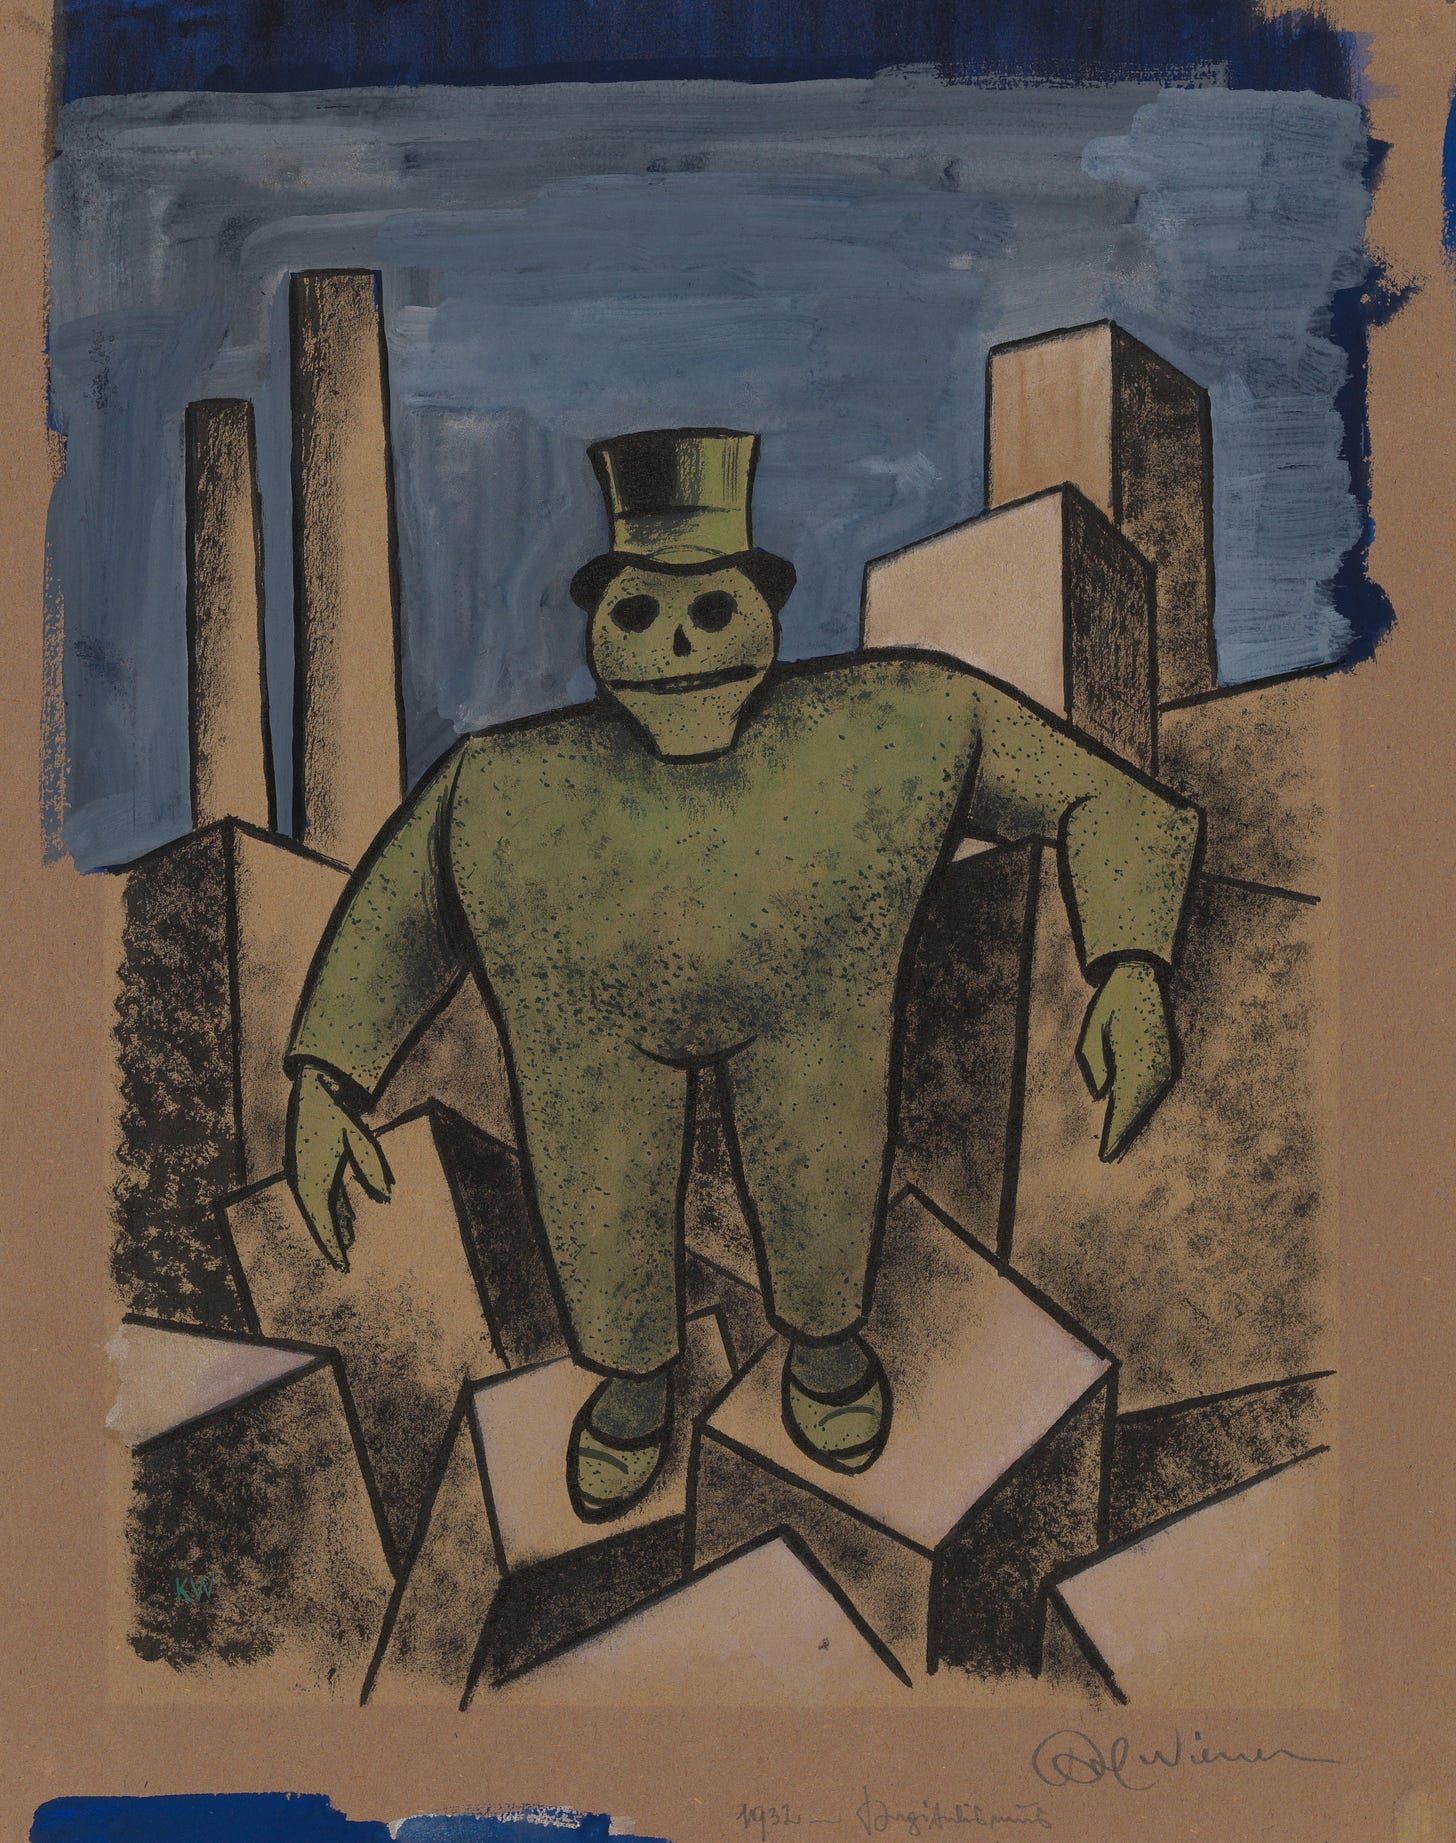 Kapitalismus (1932) by Karl Wiener